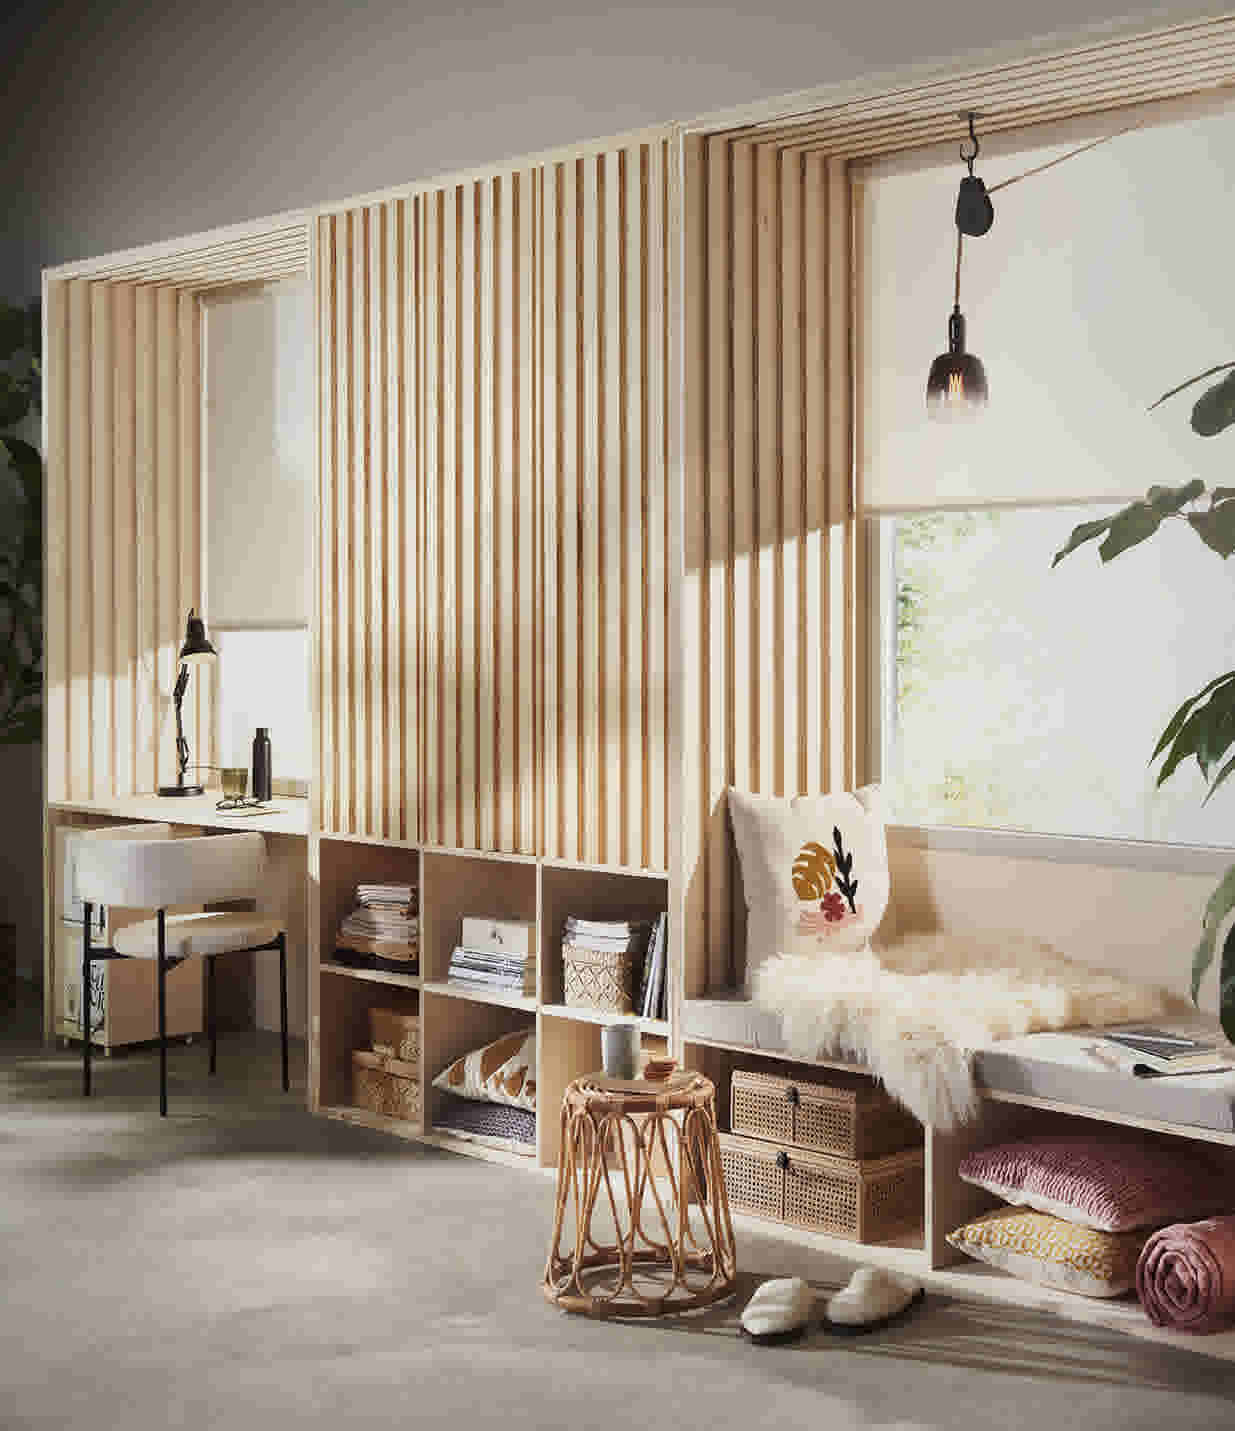 DIY houten relaxhoekje met opbergruimte in woonkamer